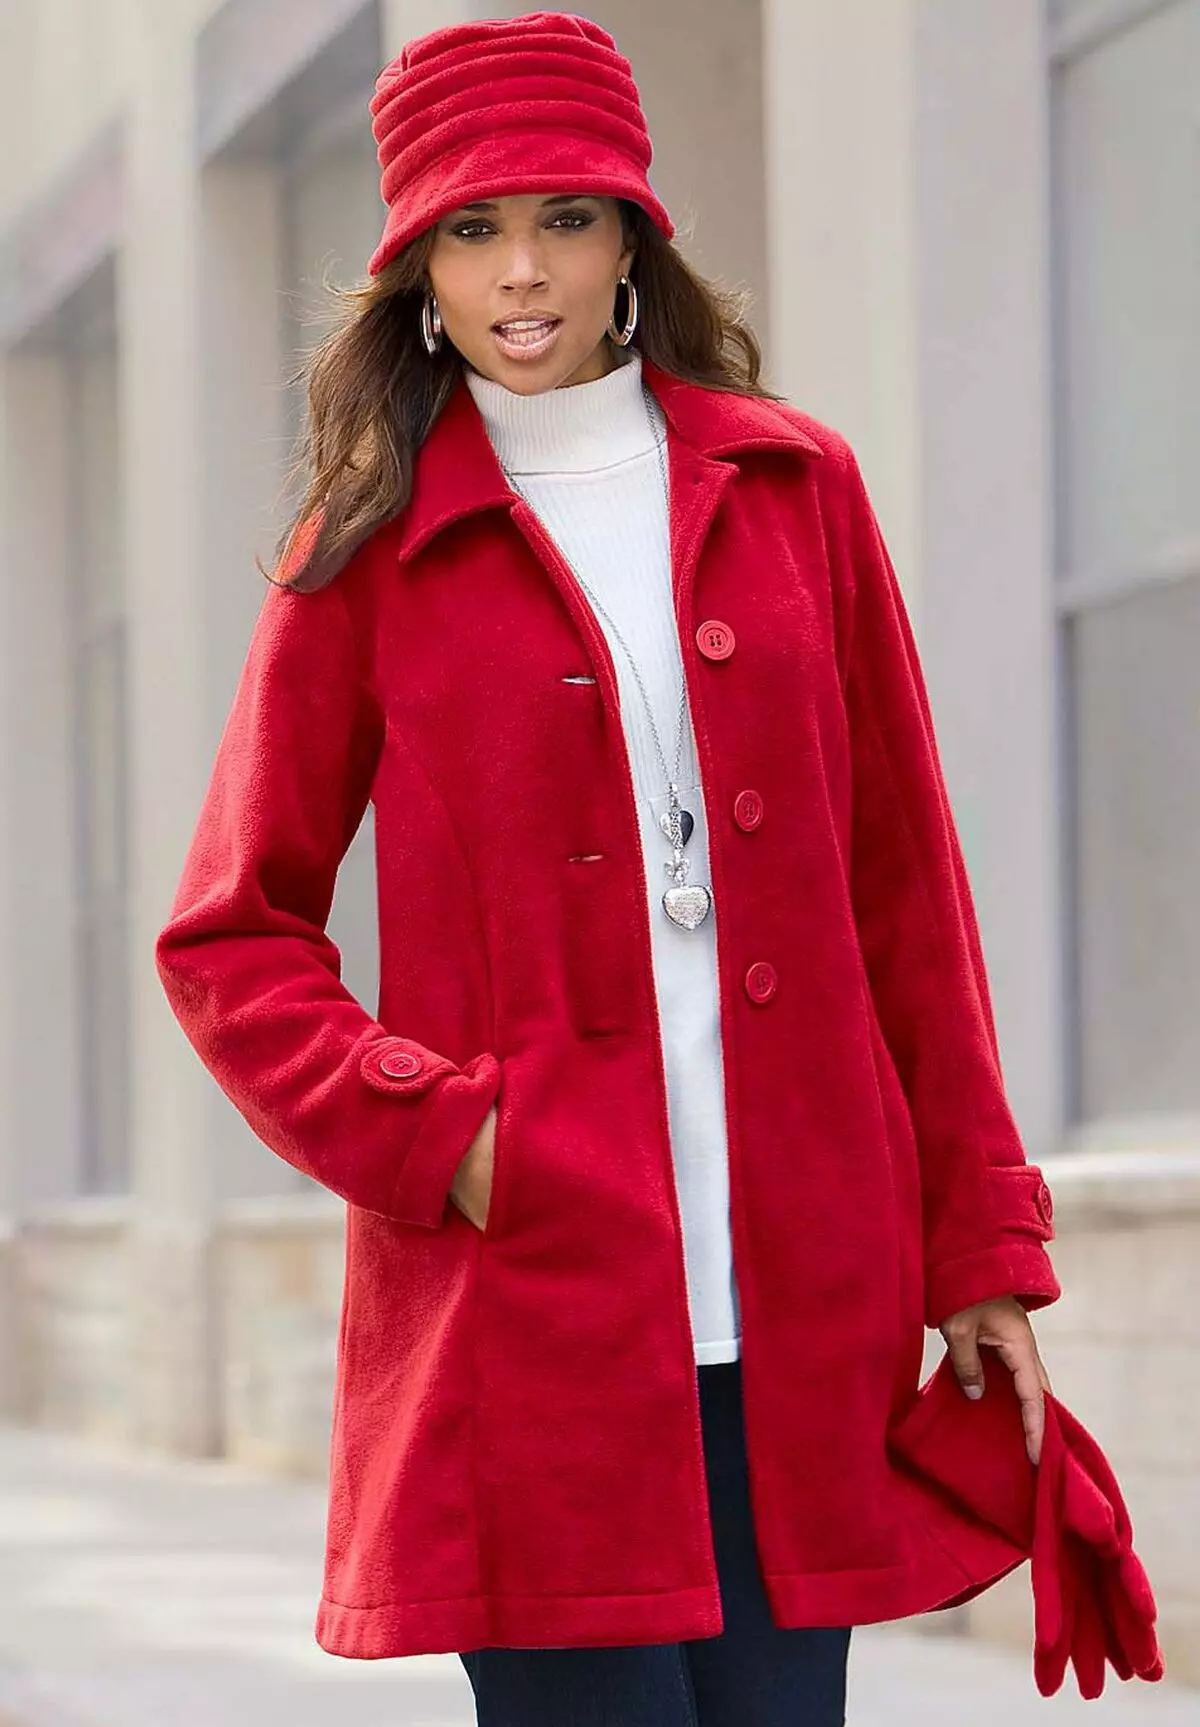 빨간 코트 (77 장의 사진)를 착용 할 것 : 짧은, 새장, 스카프, 빨간 코트가있는 이미지, 모자, 트렌디 한 2021 608_40